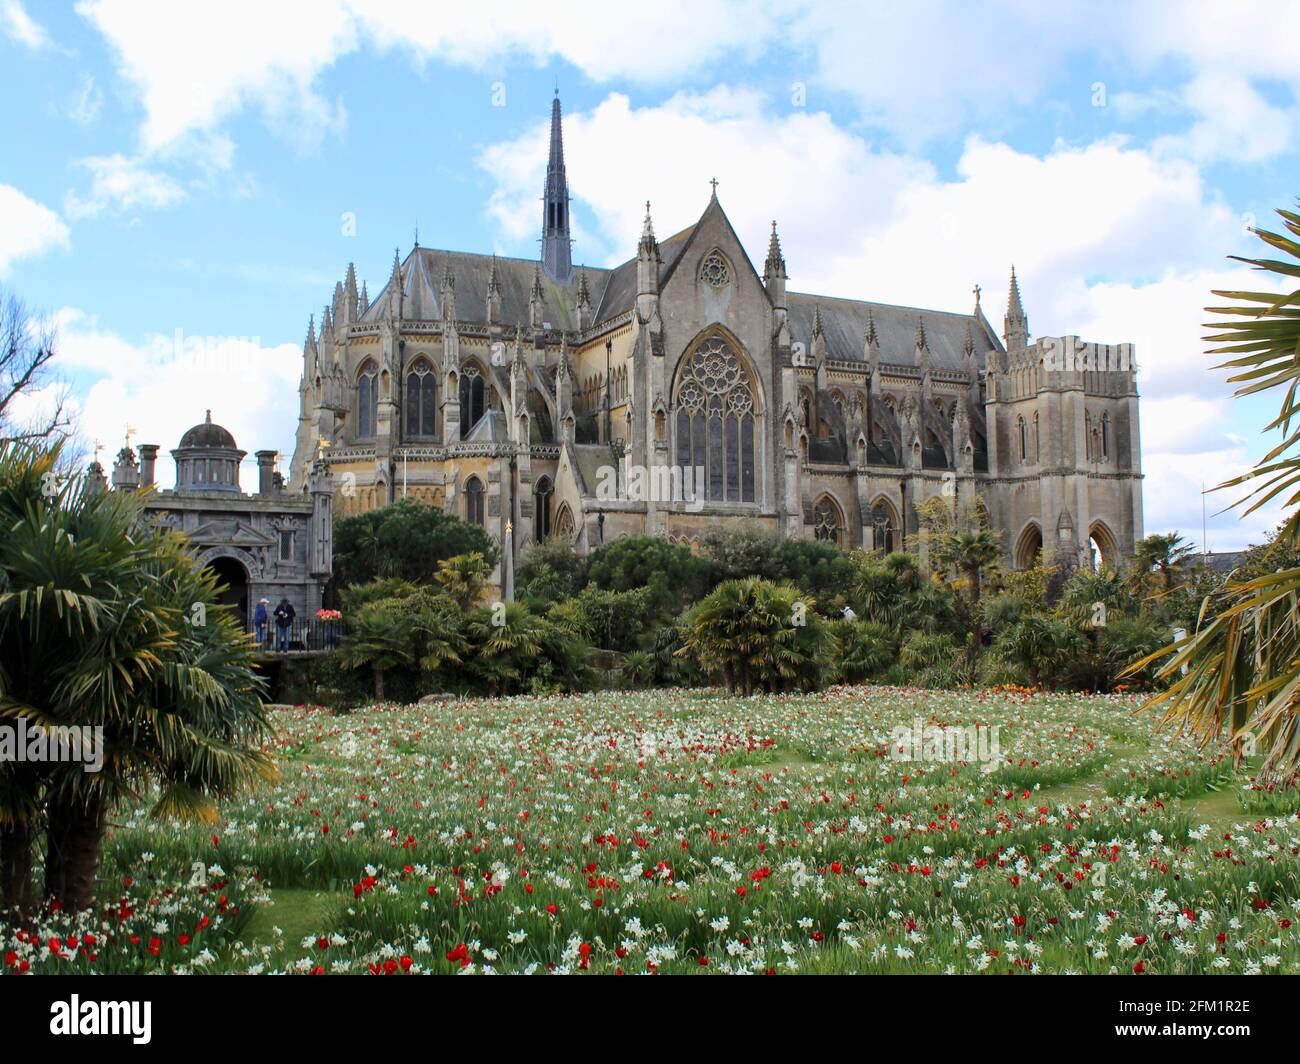 Festival des tulipes du château d'Arundel - 2021 - plantations circulaires de tulipes et de jonquilles avec toile de fond de la cathédrale d'Arundel. Banque D'Images